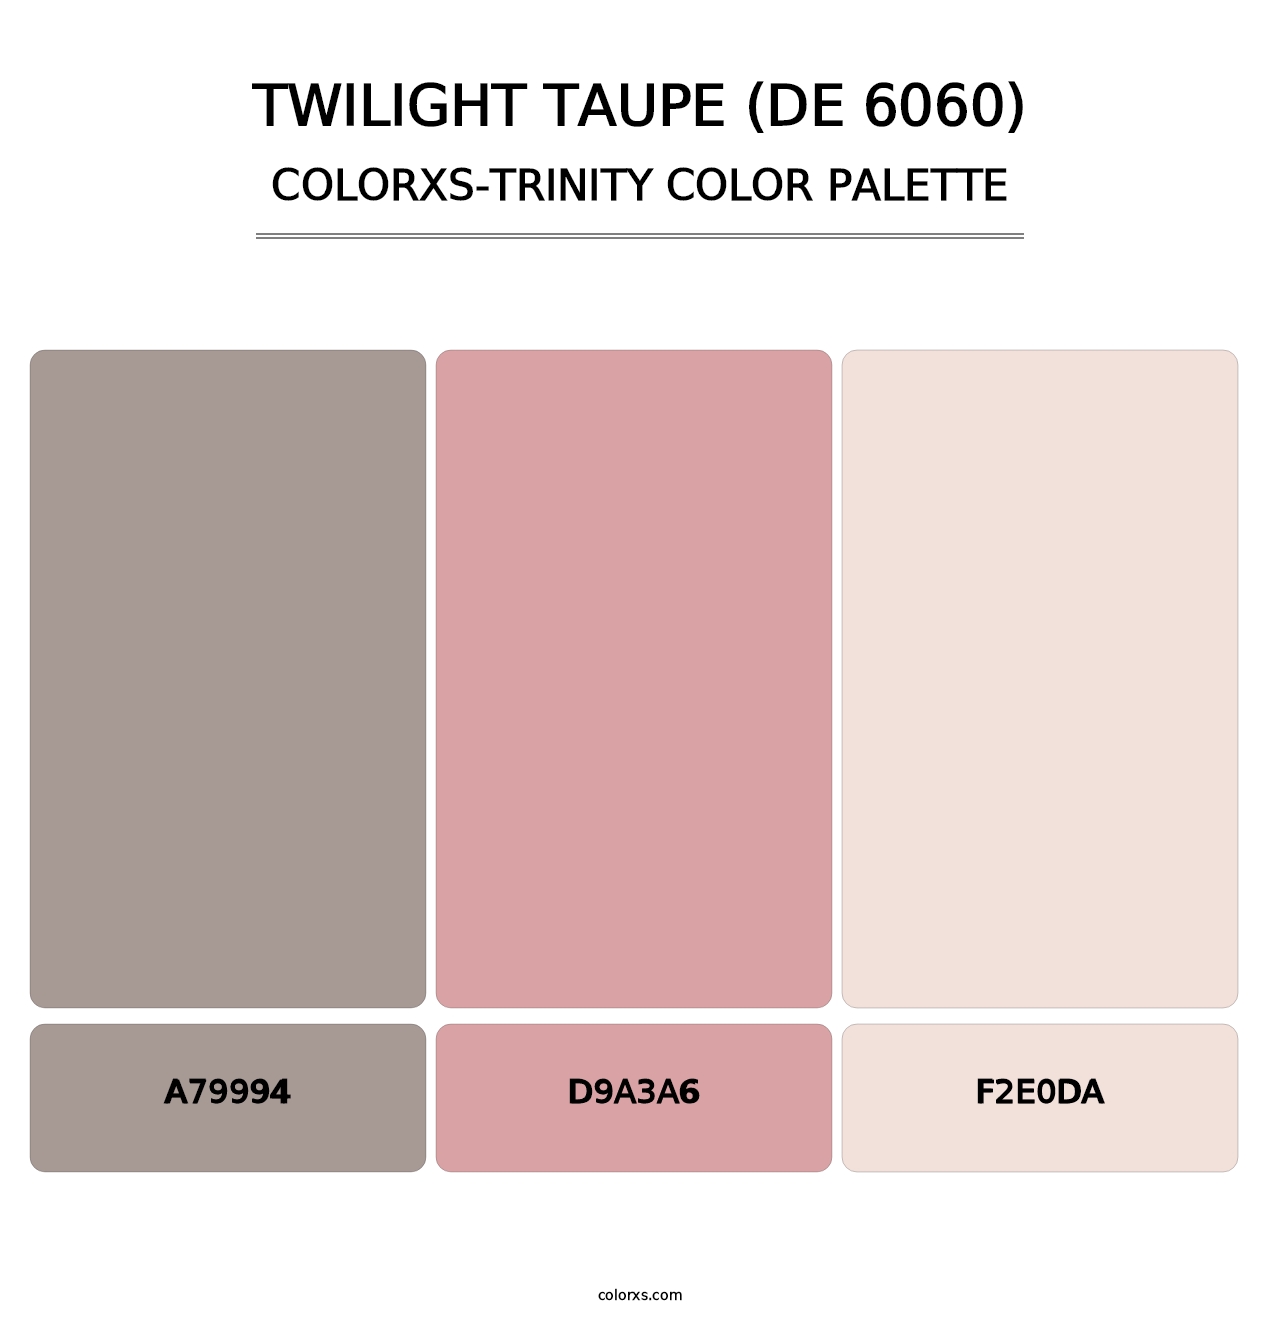 Twilight Taupe (DE 6060) - Colorxs Trinity Palette